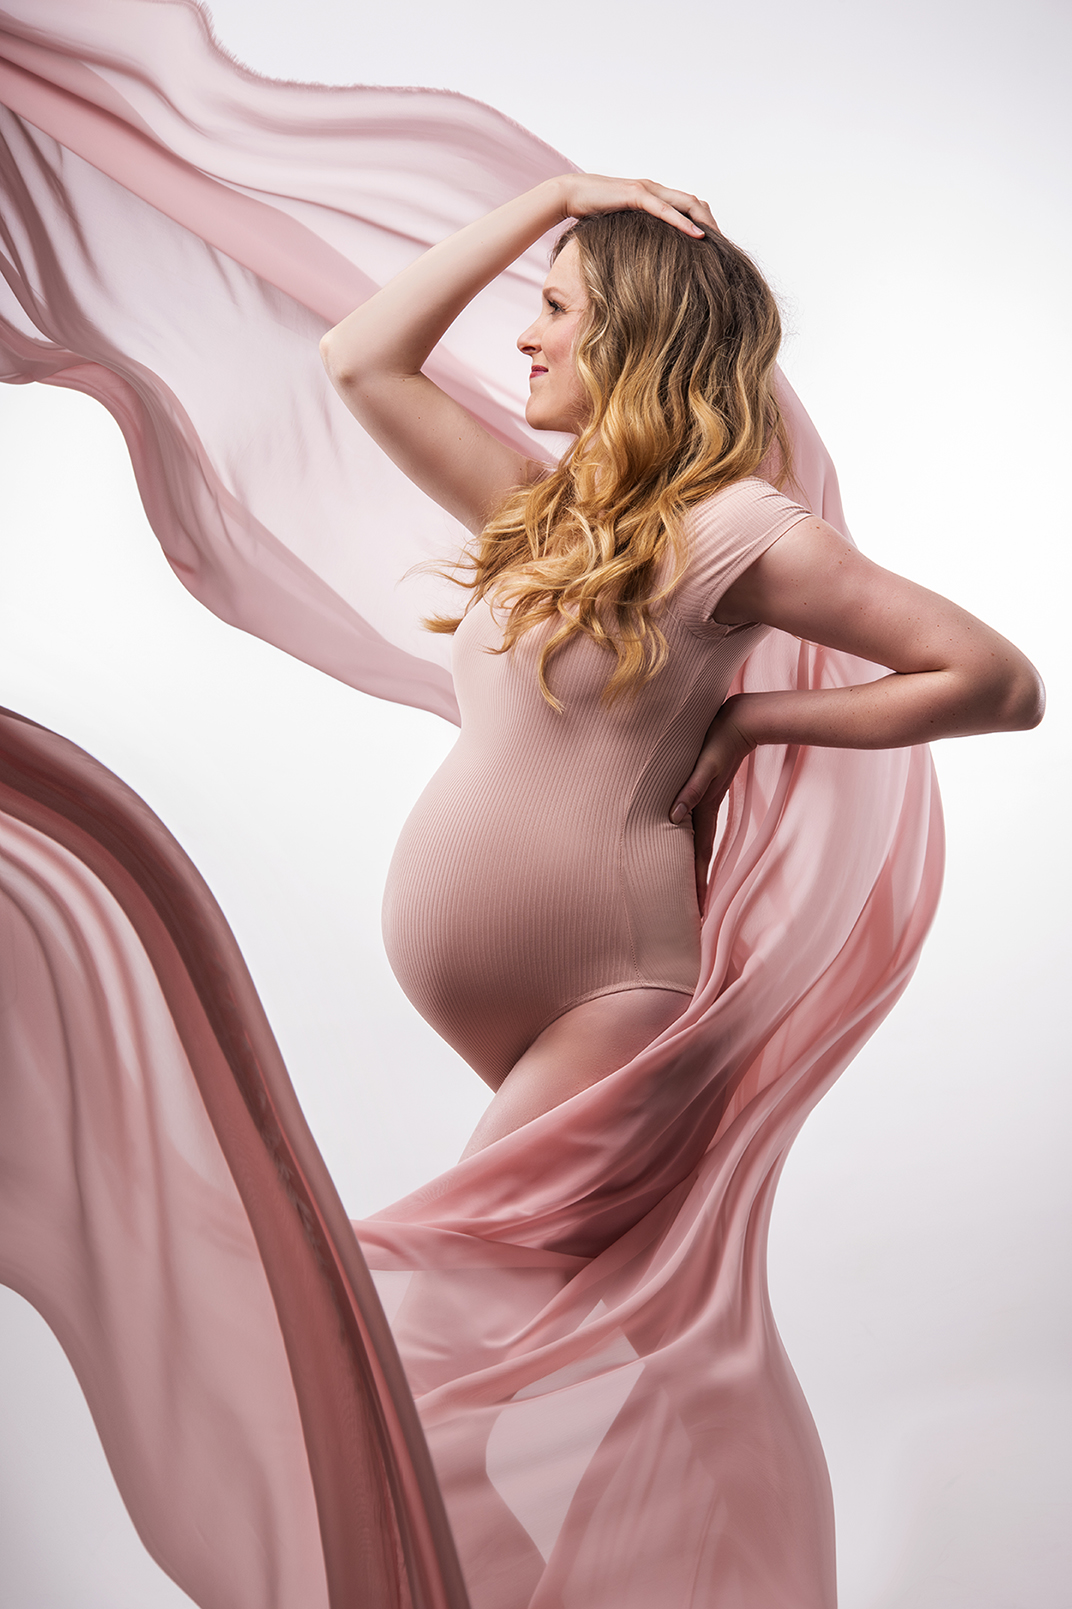 zwangerschapsfotoshoot, fotoshoot zwangerschap, zwangerschapsshoot met partner, Groningen, Amsterdam, Utrecht